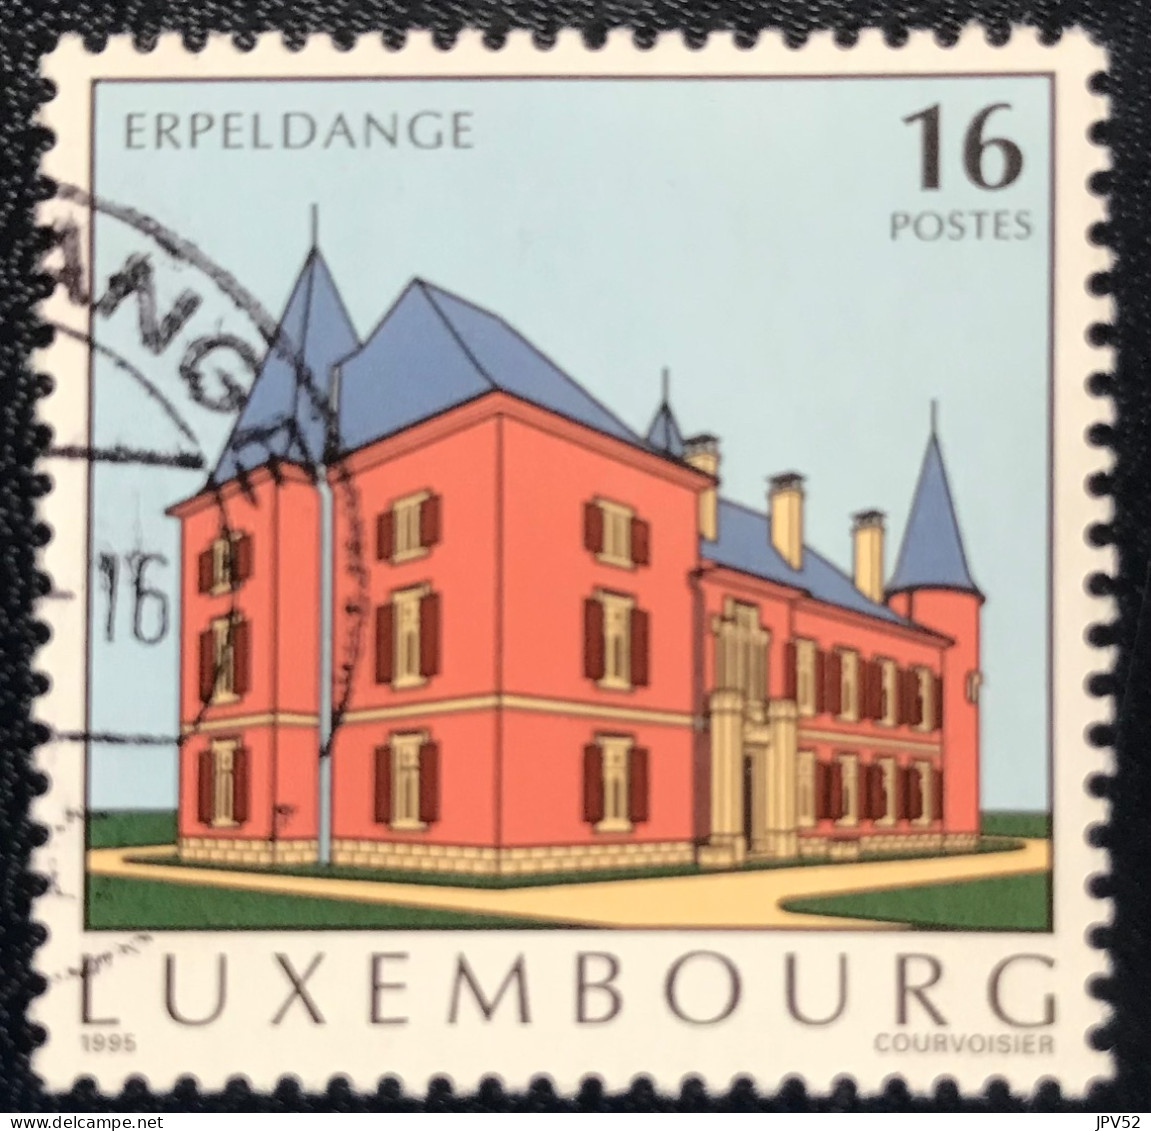 Luxembourg - Luxemburg - C18/30 - 1995 - (°)used - Michel 1375 - Bezienswaardigheden - Gebruikt